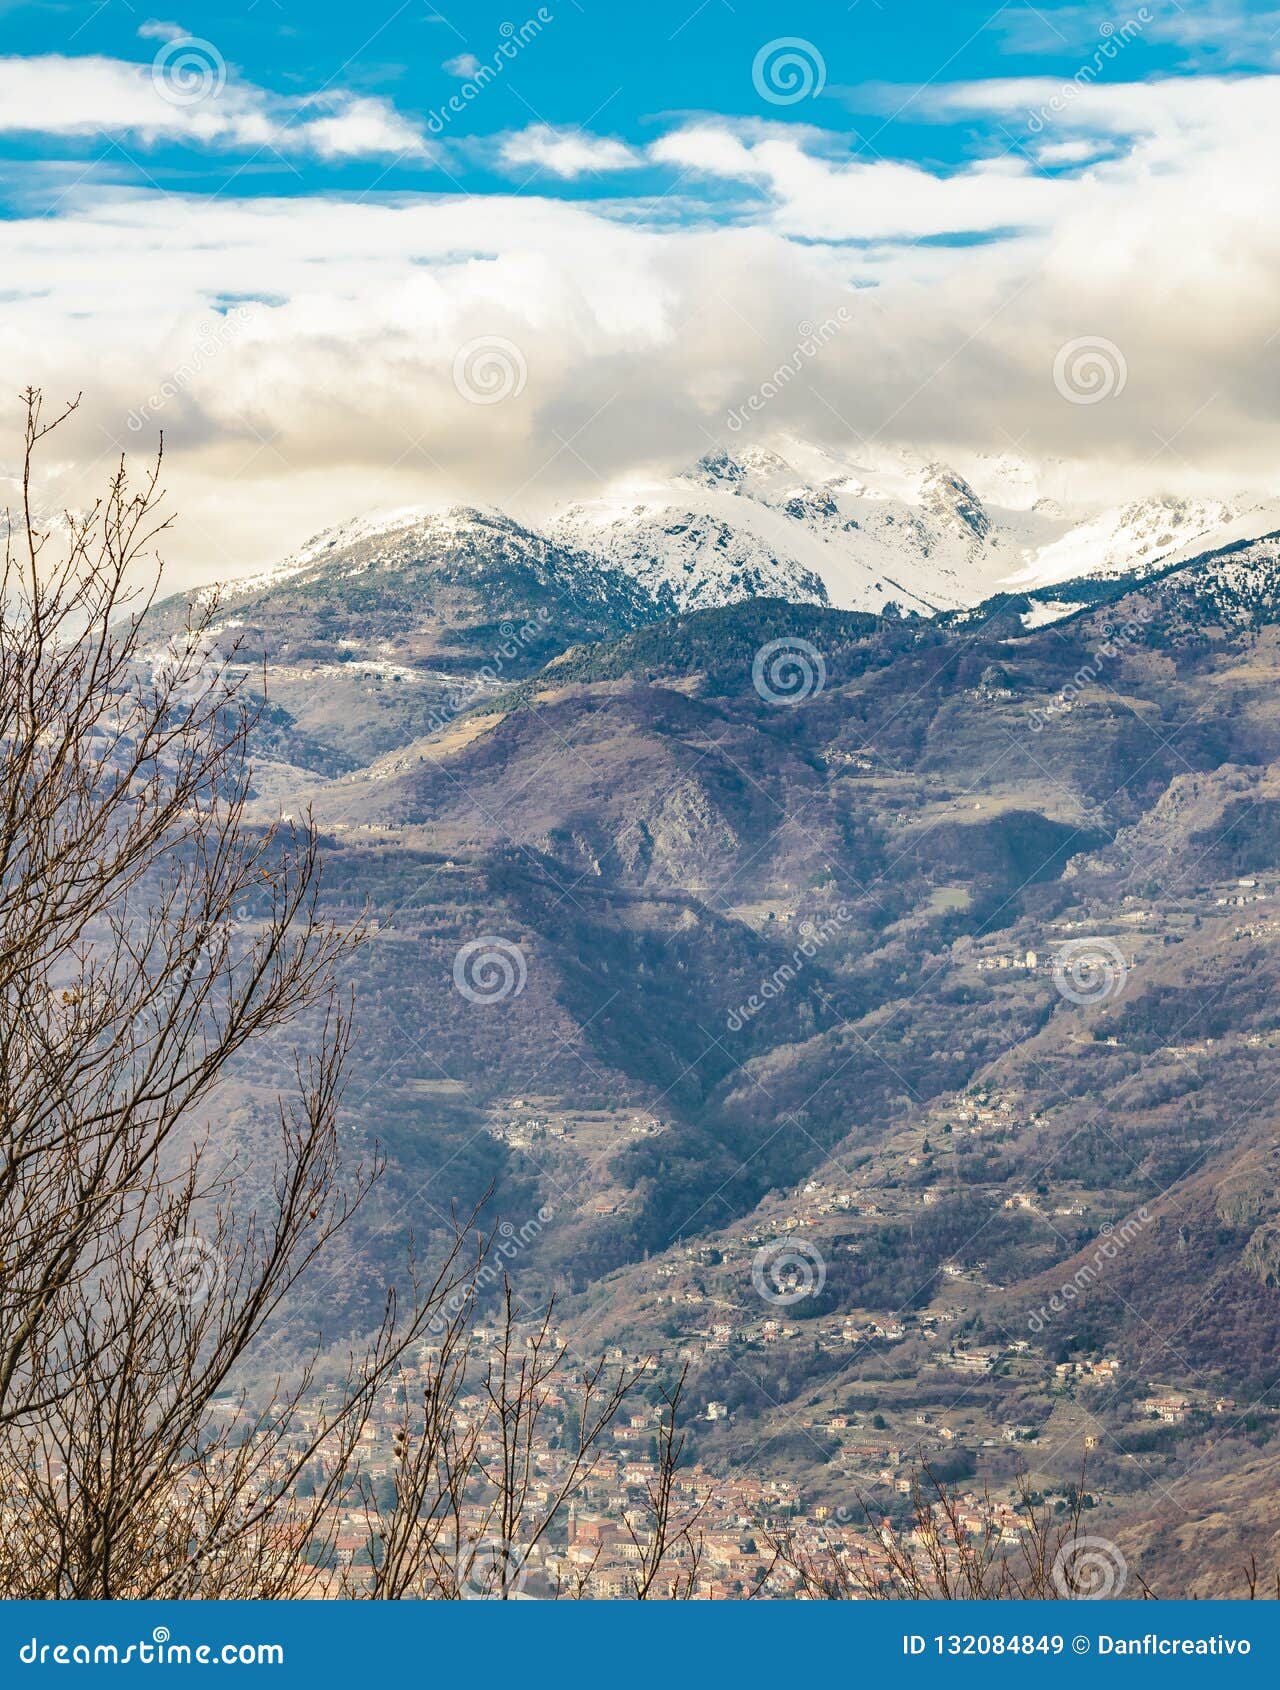 alpes mountains aerial view, piamonte, italy